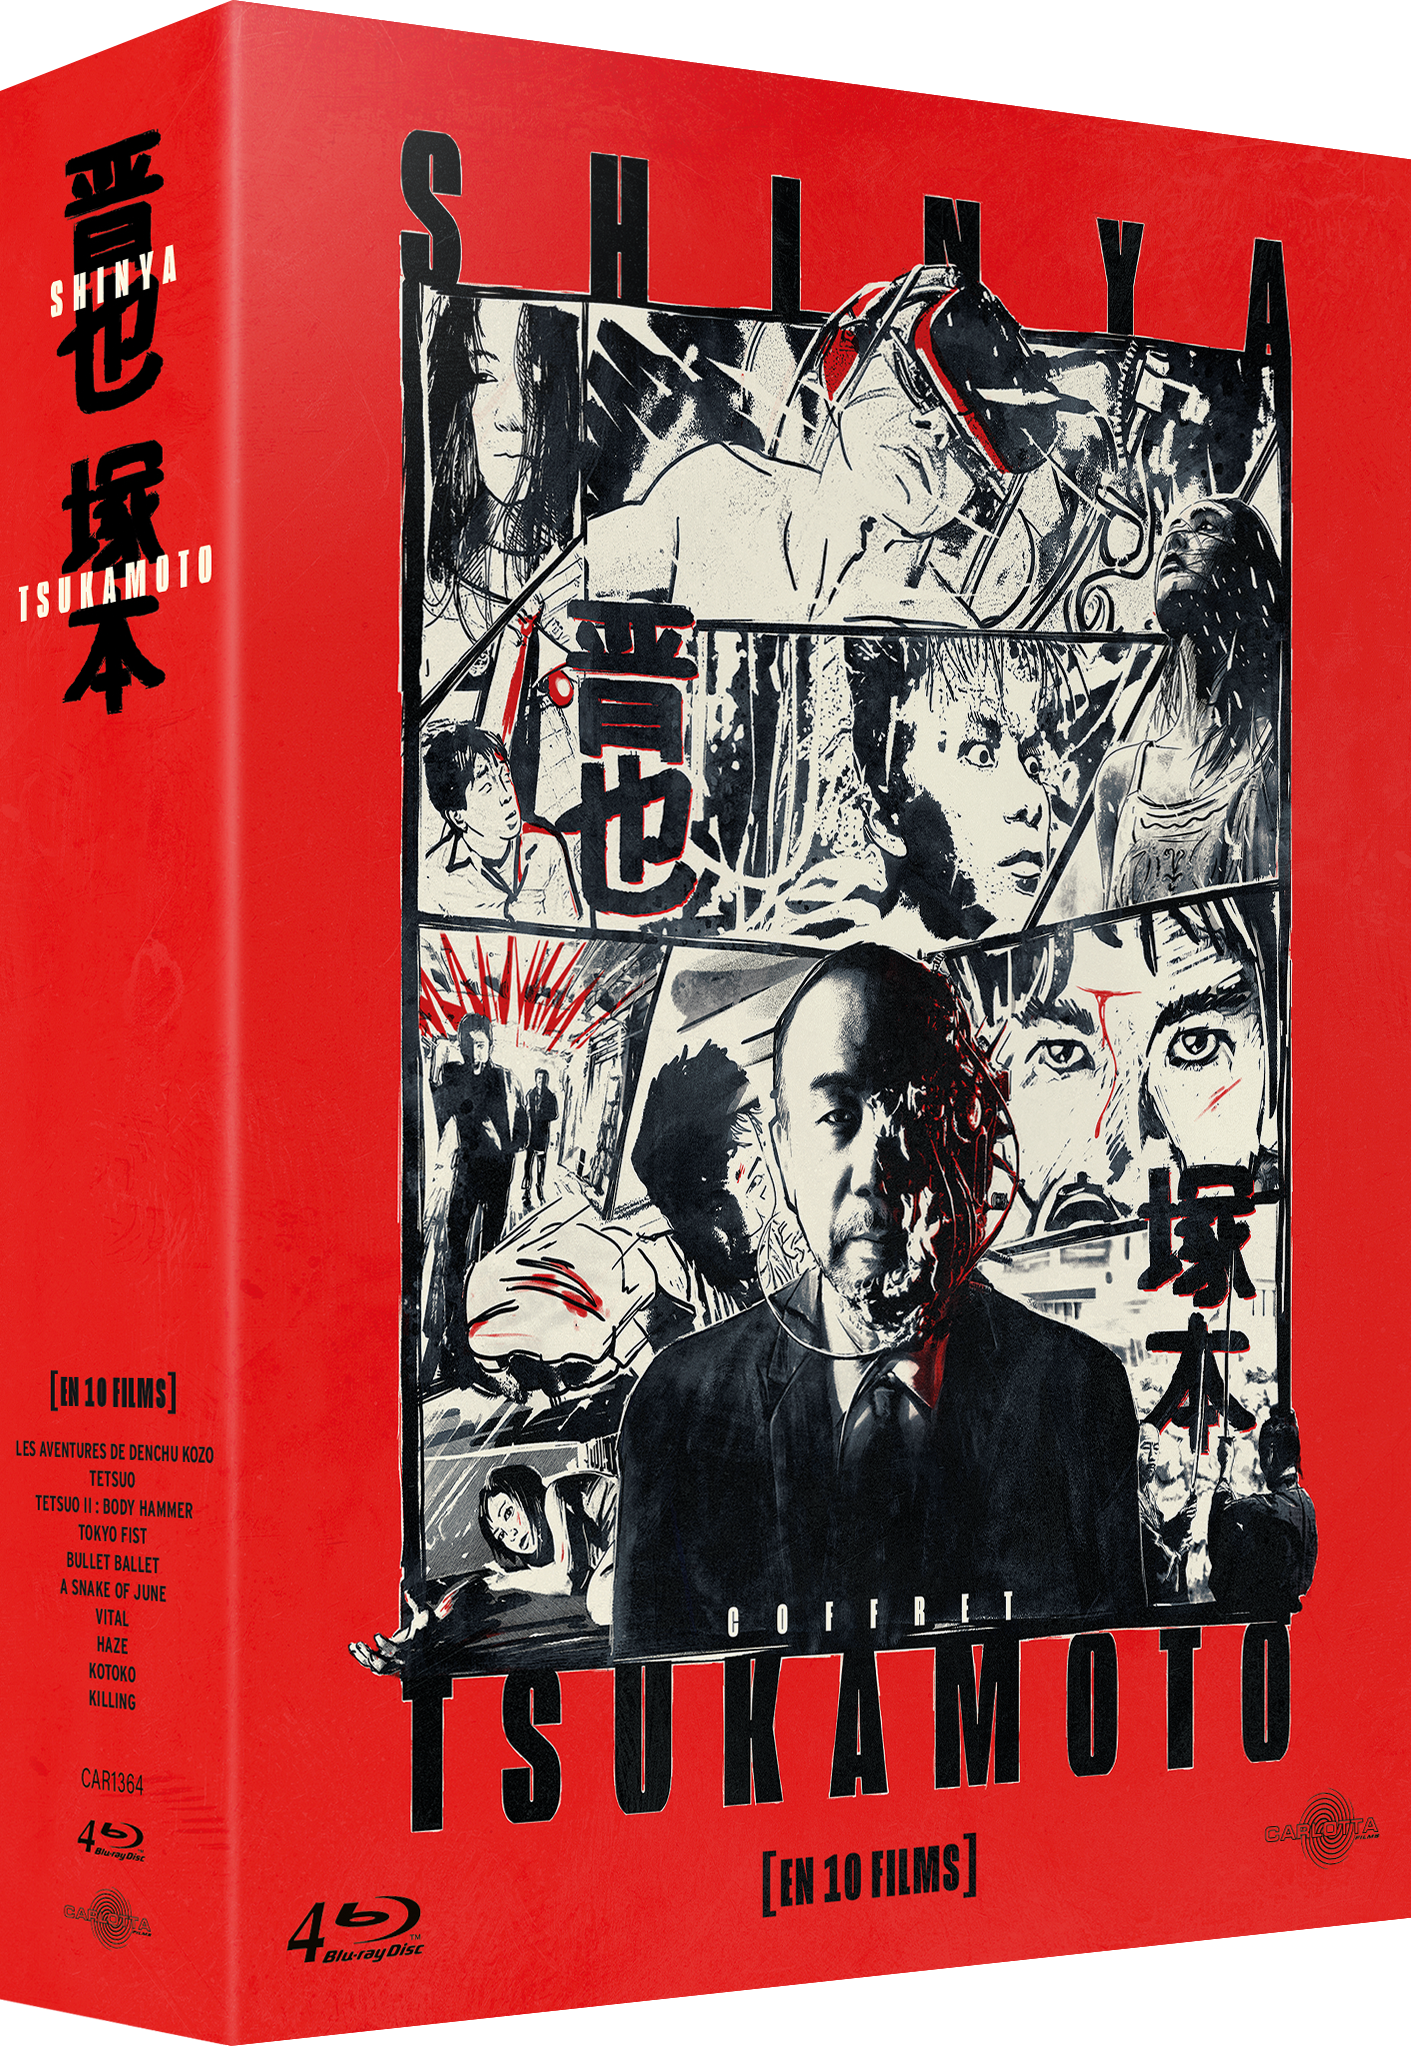 Shinya Tsukamoto box set in 10 films